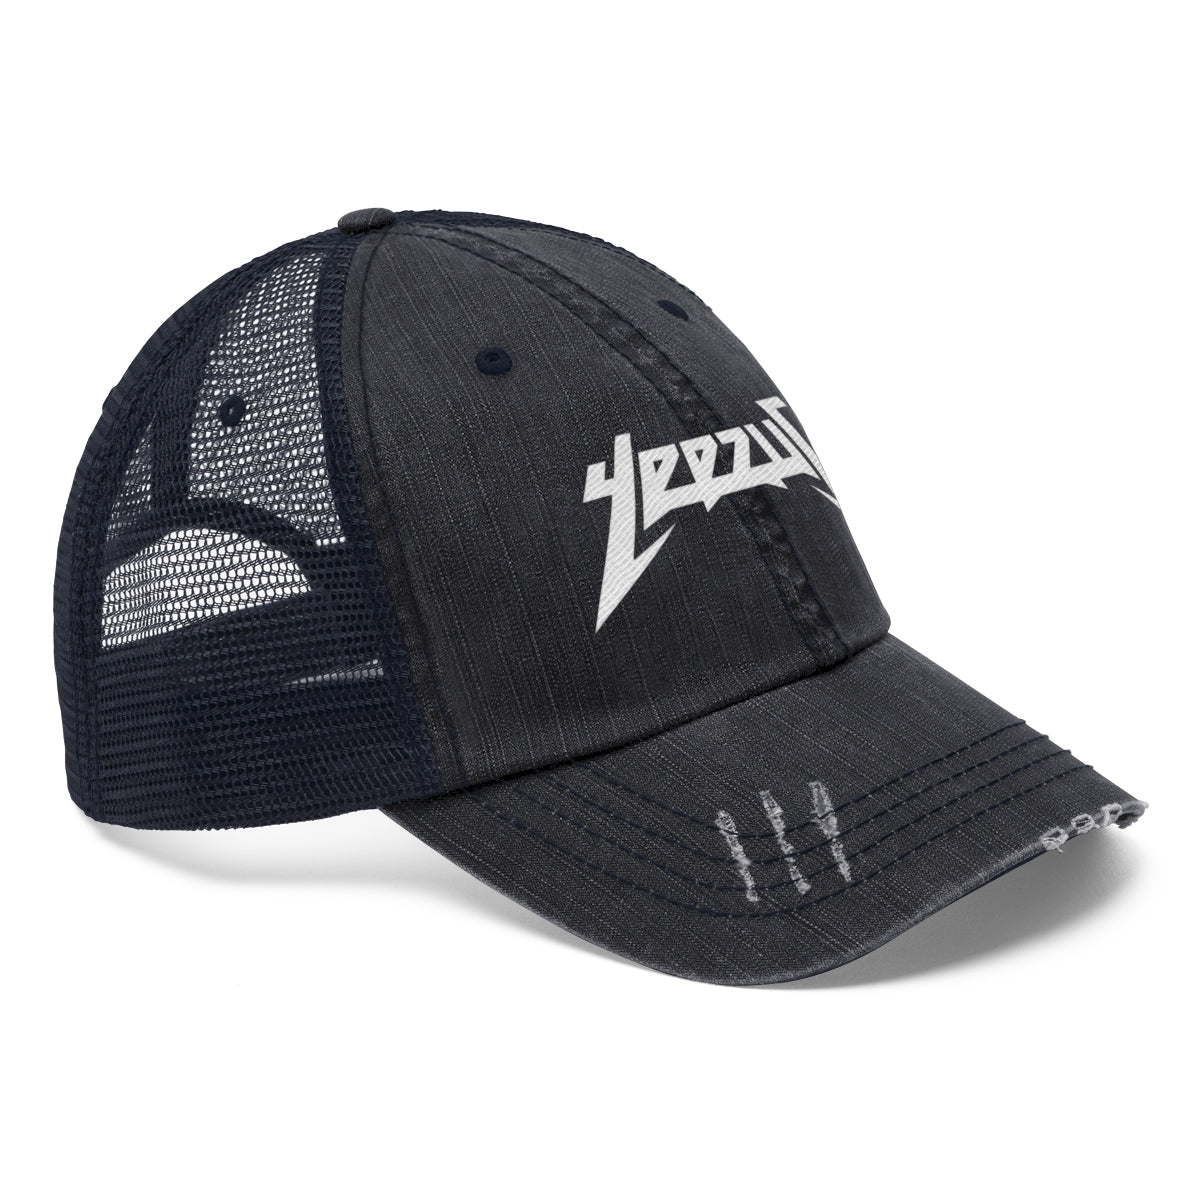 Yeezus Unisex Trucker Hat-True Navy-One size-Archethype